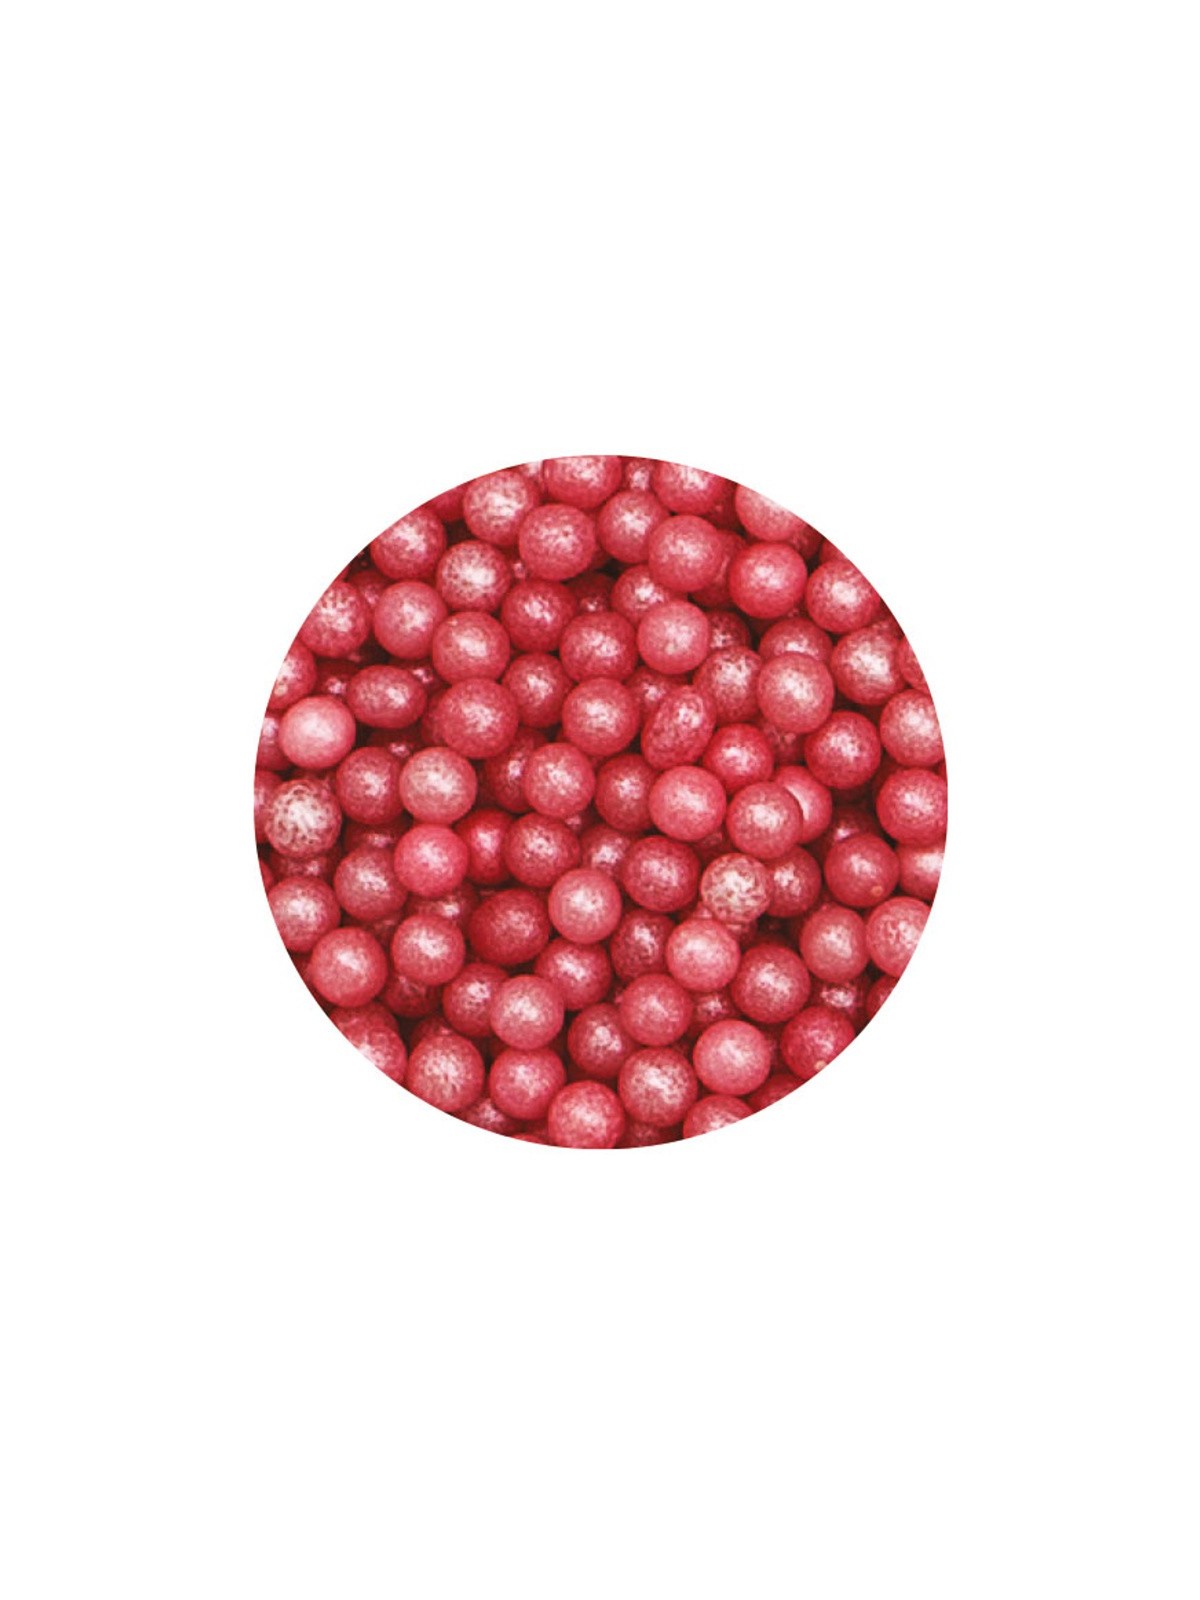 Decora - Cukrové perličky 4mm - perleťové růžové - 100g